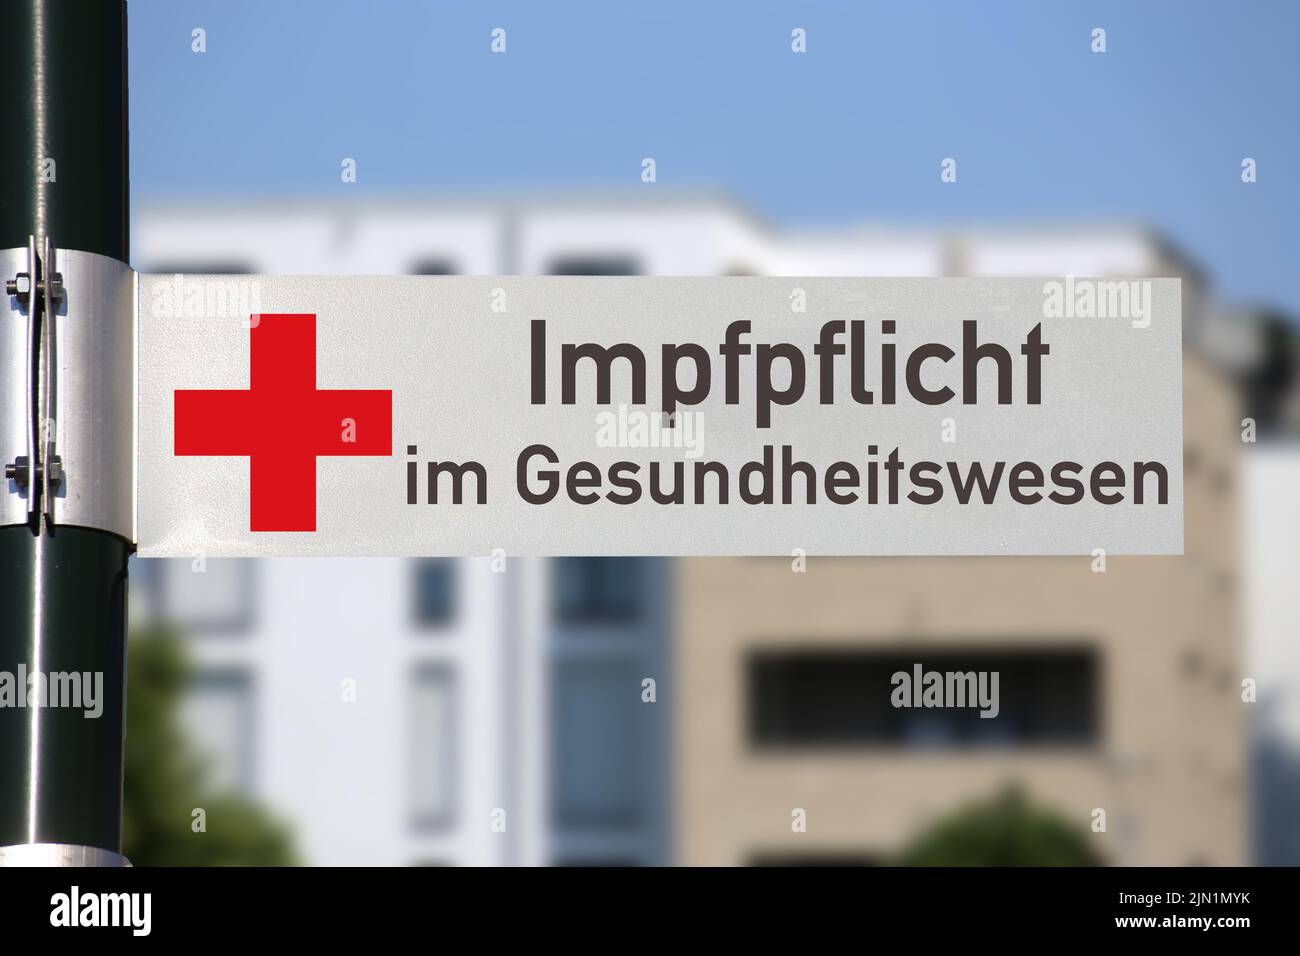 Symbolbild Impfflicht im Gesundheitswesen: Straßenschild mit rotem Kreuz und entsprechender Aufschrift vor einem Gebäude Foto Stock